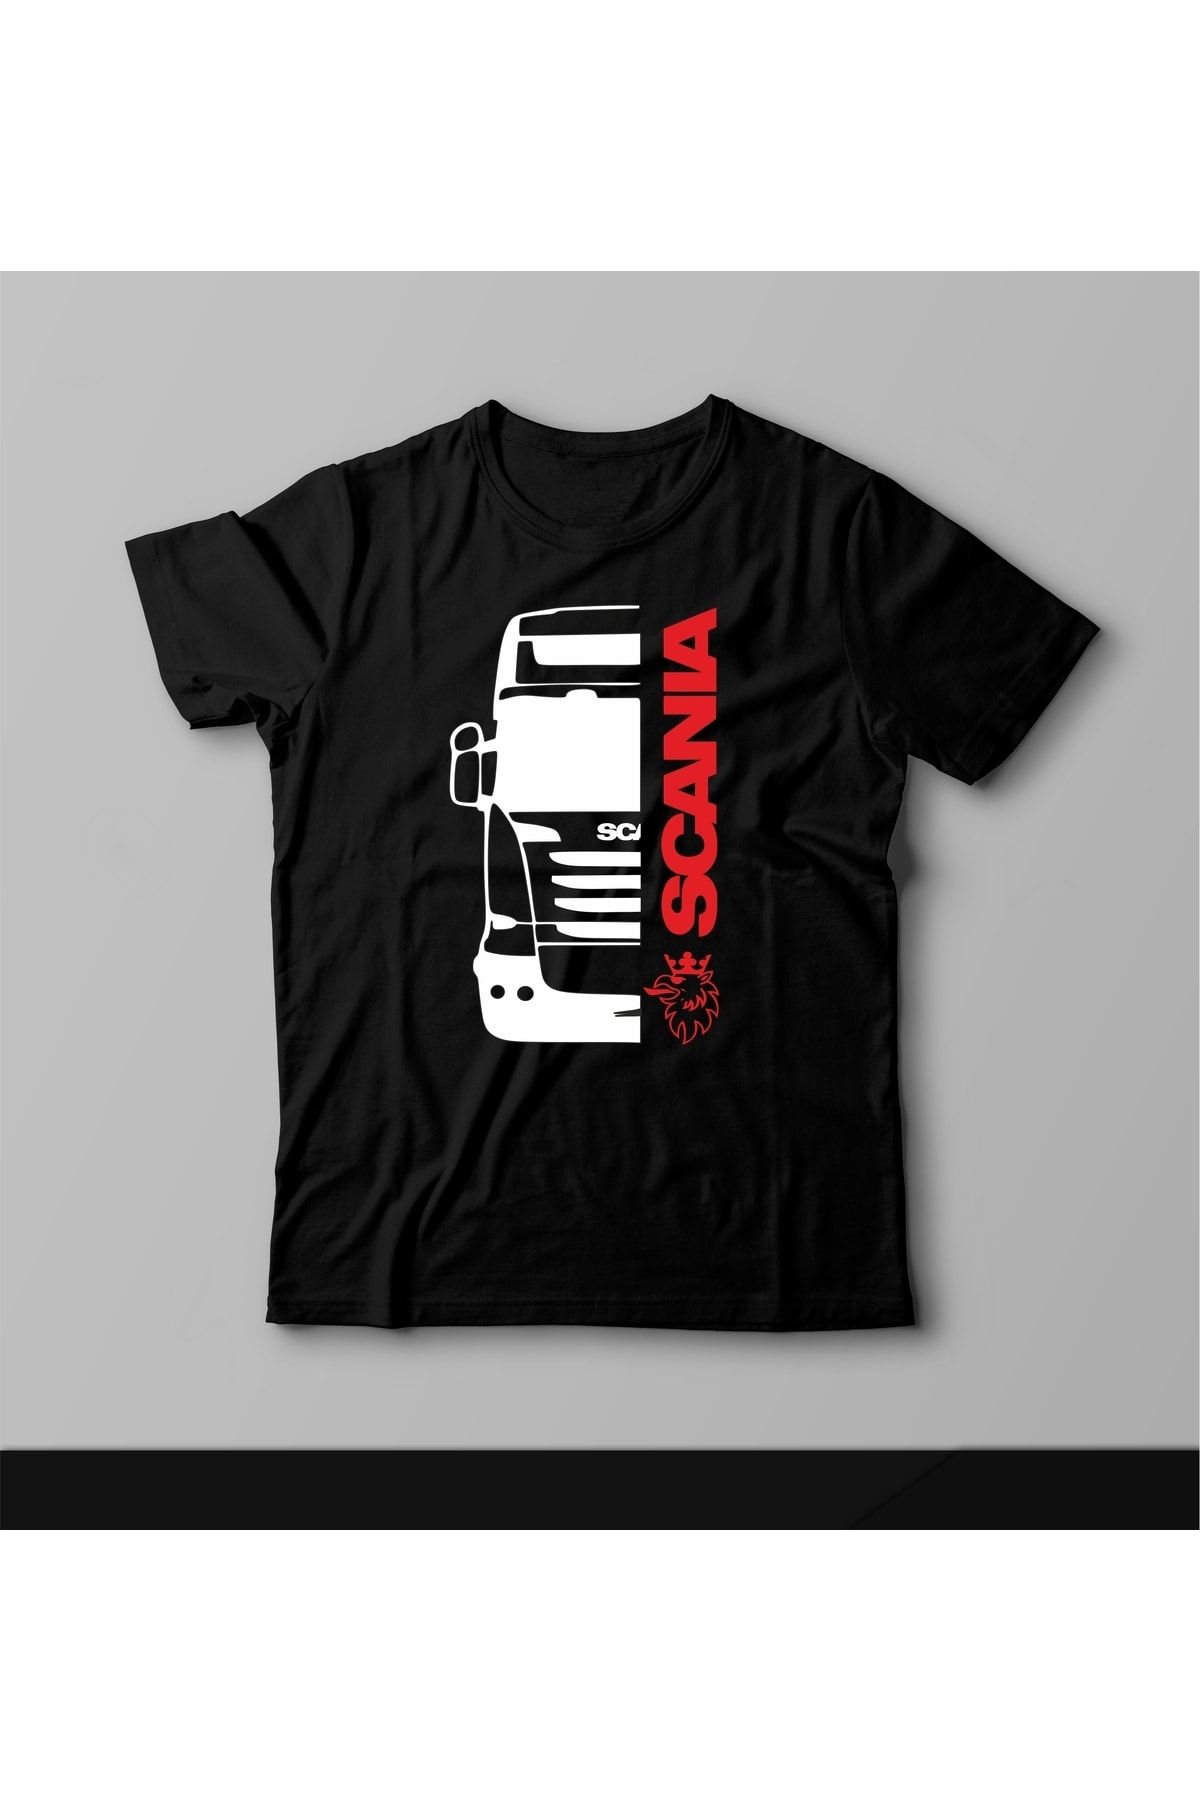 Açık Garaj Scania Graphic Baskılı Tişört